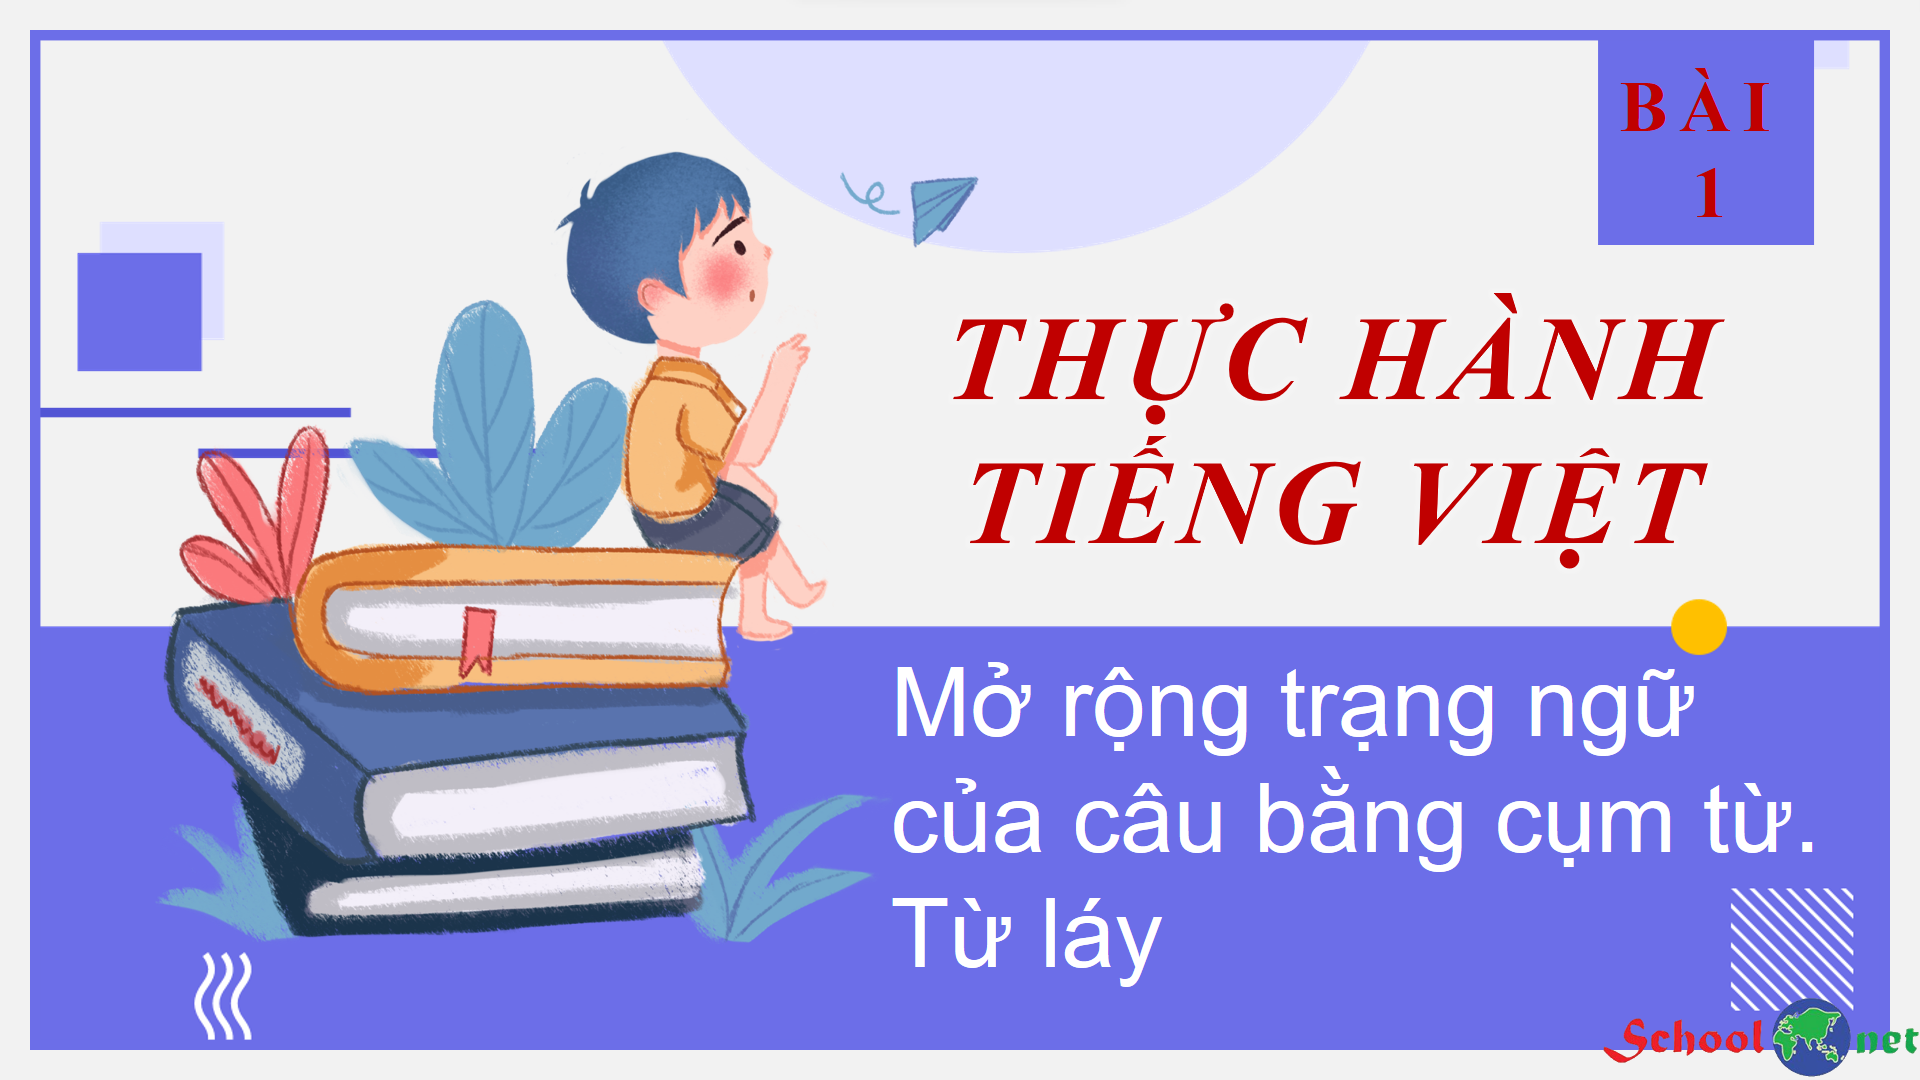 Bài 1: Thực hành tiếng Việt: Mở rộng trạng ngữ của câu bằng cụm từ. Từ láy - Bộ sách Kết nối tri thức với cuộc sống